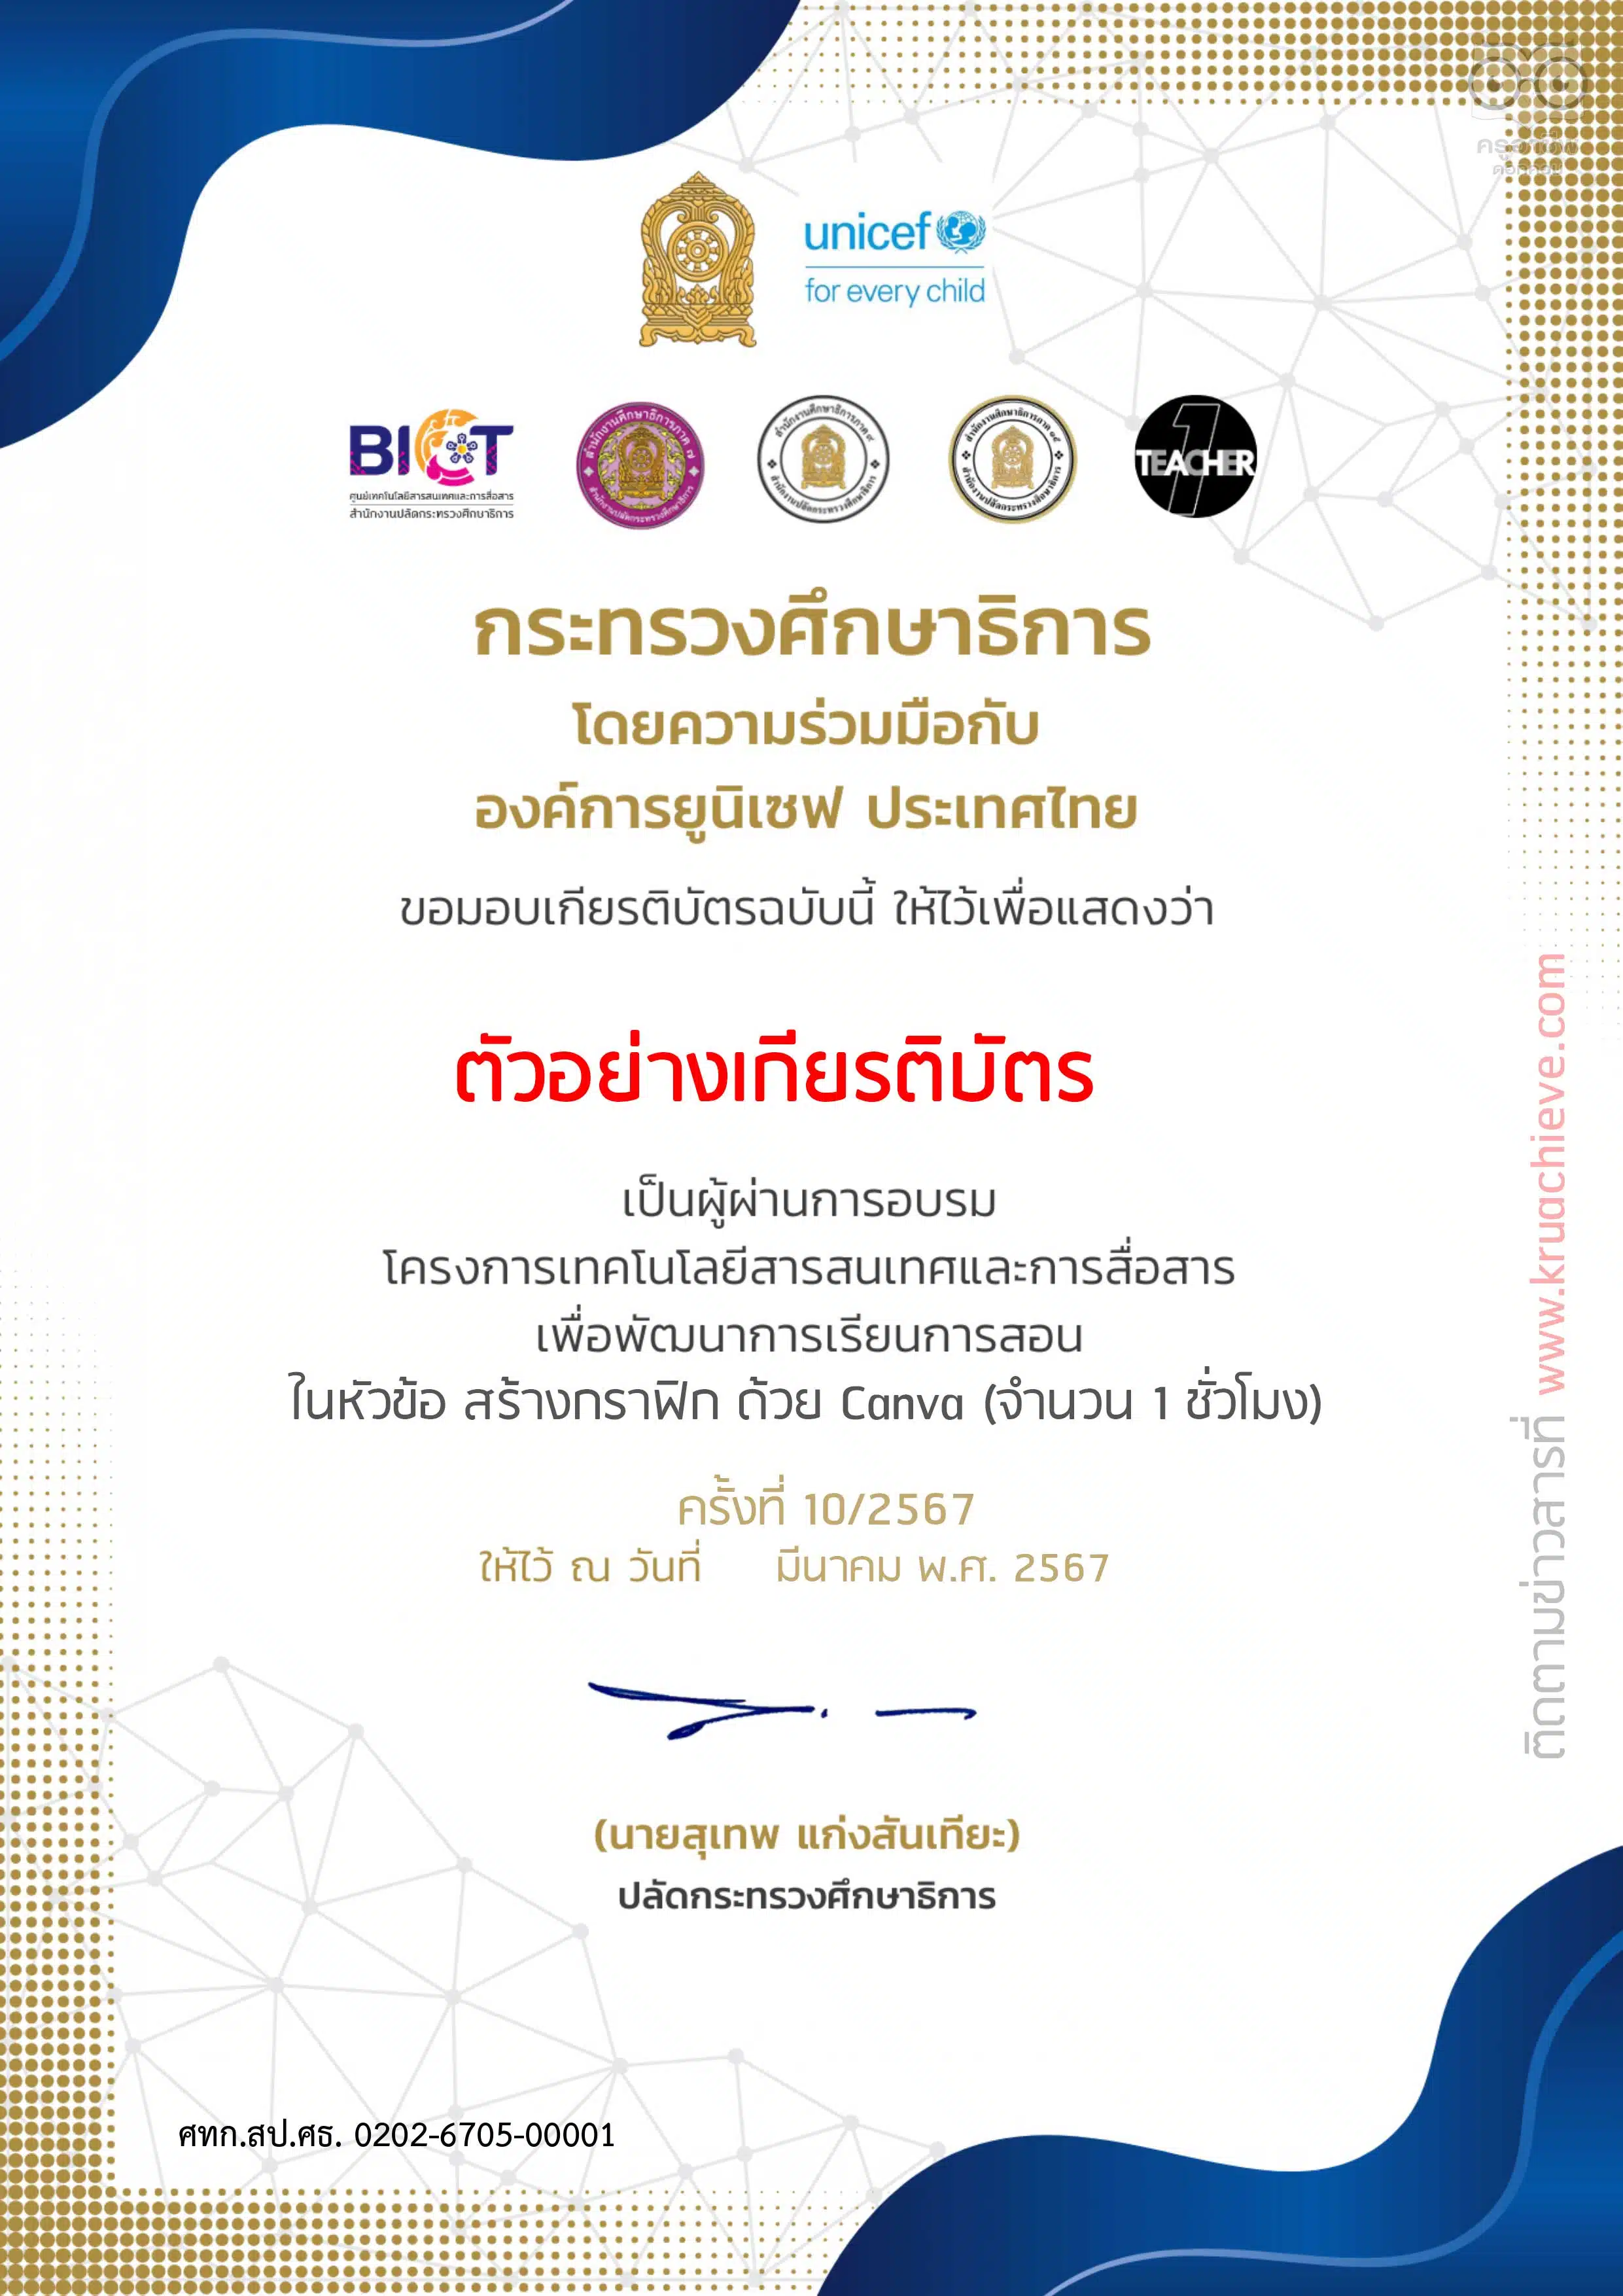 ลิงก์ลงทะเบียนอบรม OTT LIVE ครั้งที่ 11 เปิดปุ๊ปปิดปั๊ปกับ PPT วันพฤหัสบดี ที่ 21 มีนาคม 2567 รับเกียรติบัตรฟรี โดยสำนักงานปลัดกระทรวงศึกษาธิการ และองค์การยูนิเซฟ ประเทศไทย